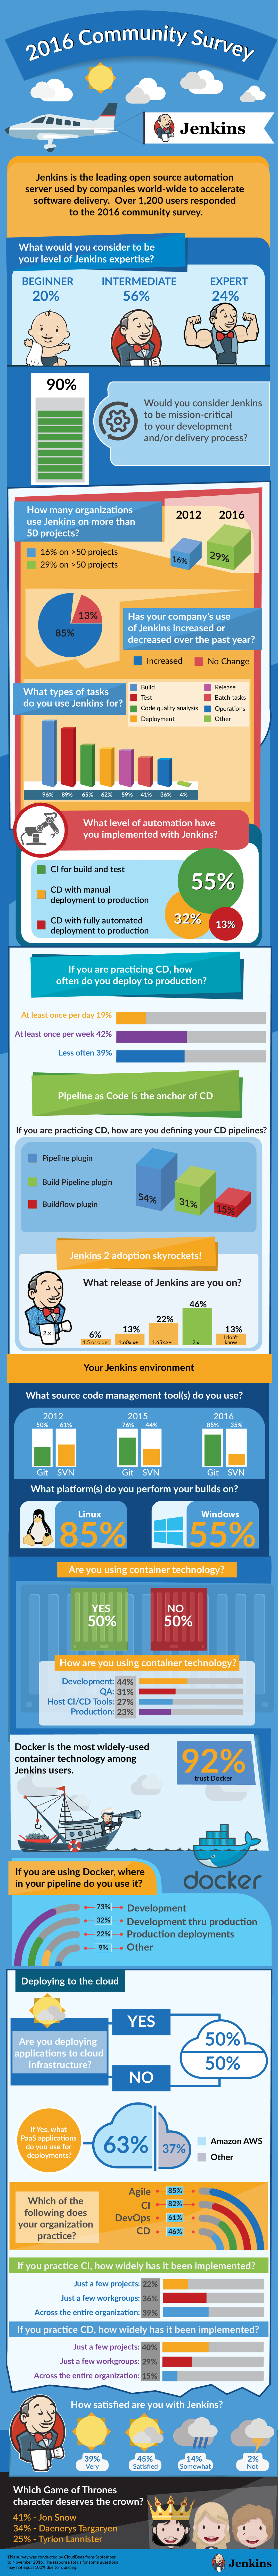 2016 jenkins community survey